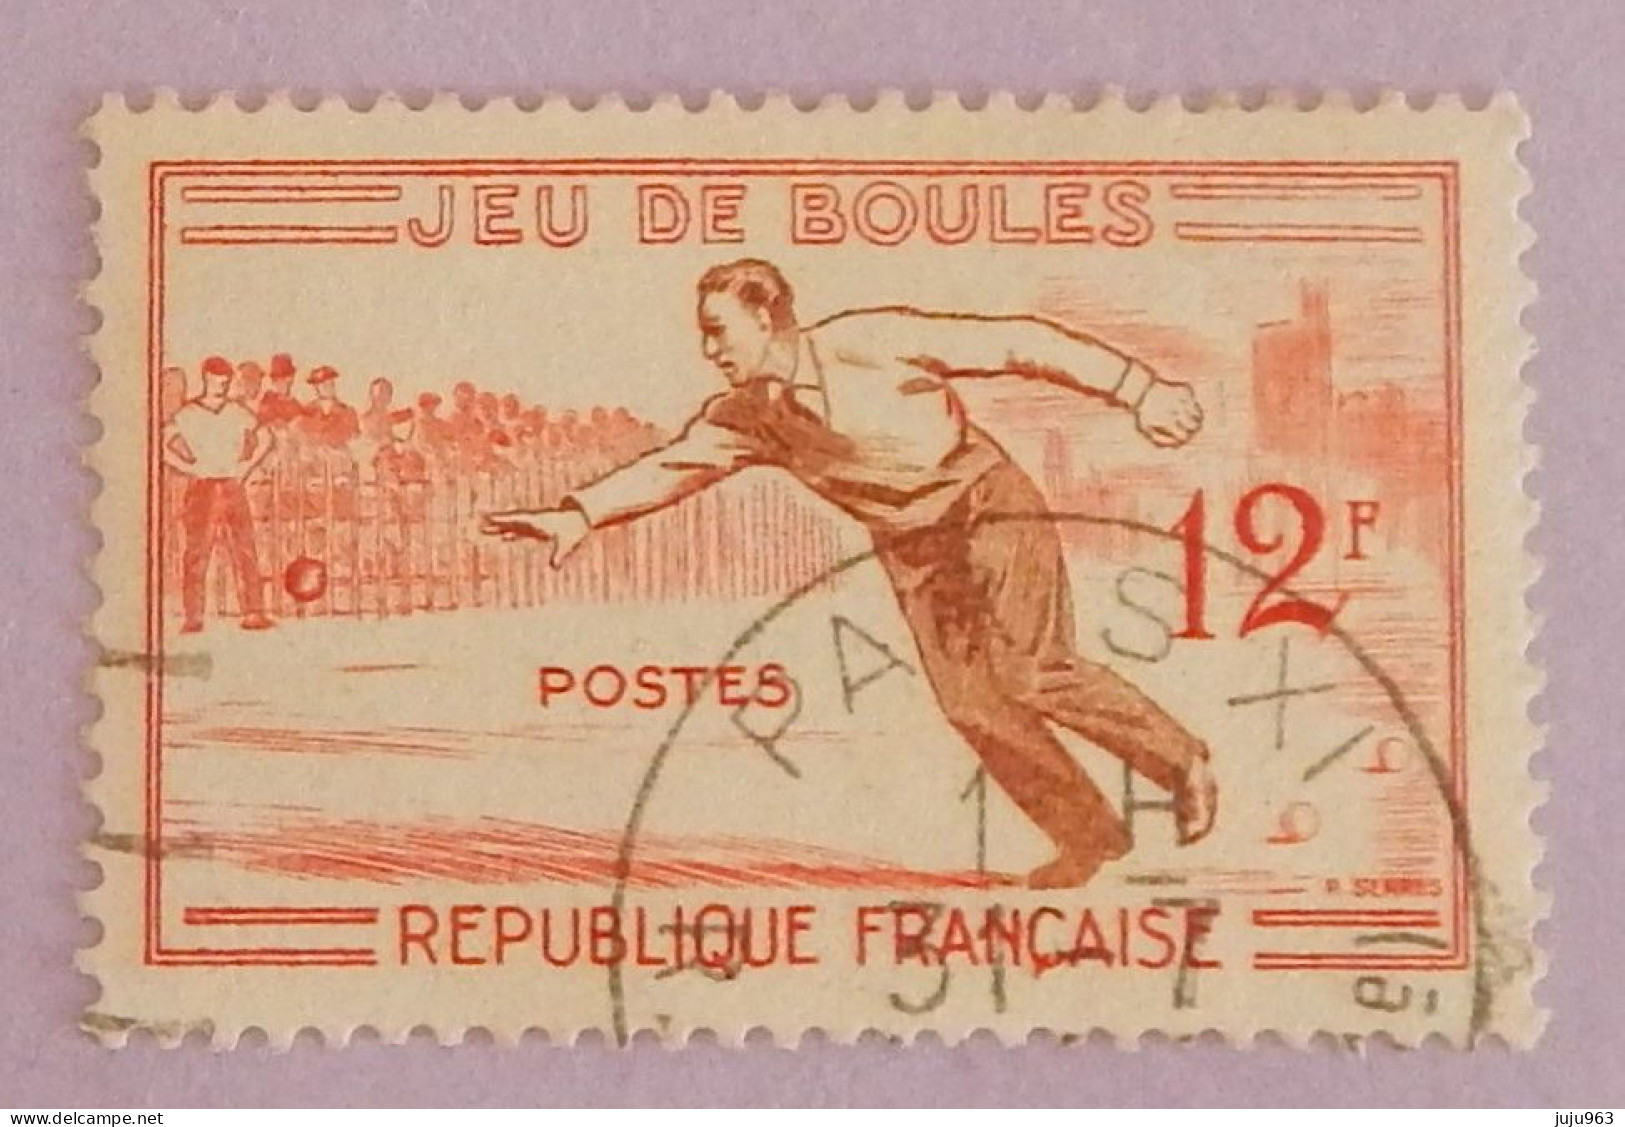 FRANCE YT 1161 CACHET ROND "JEU DE BOULES" ANNÉE 1958 - Used Stamps